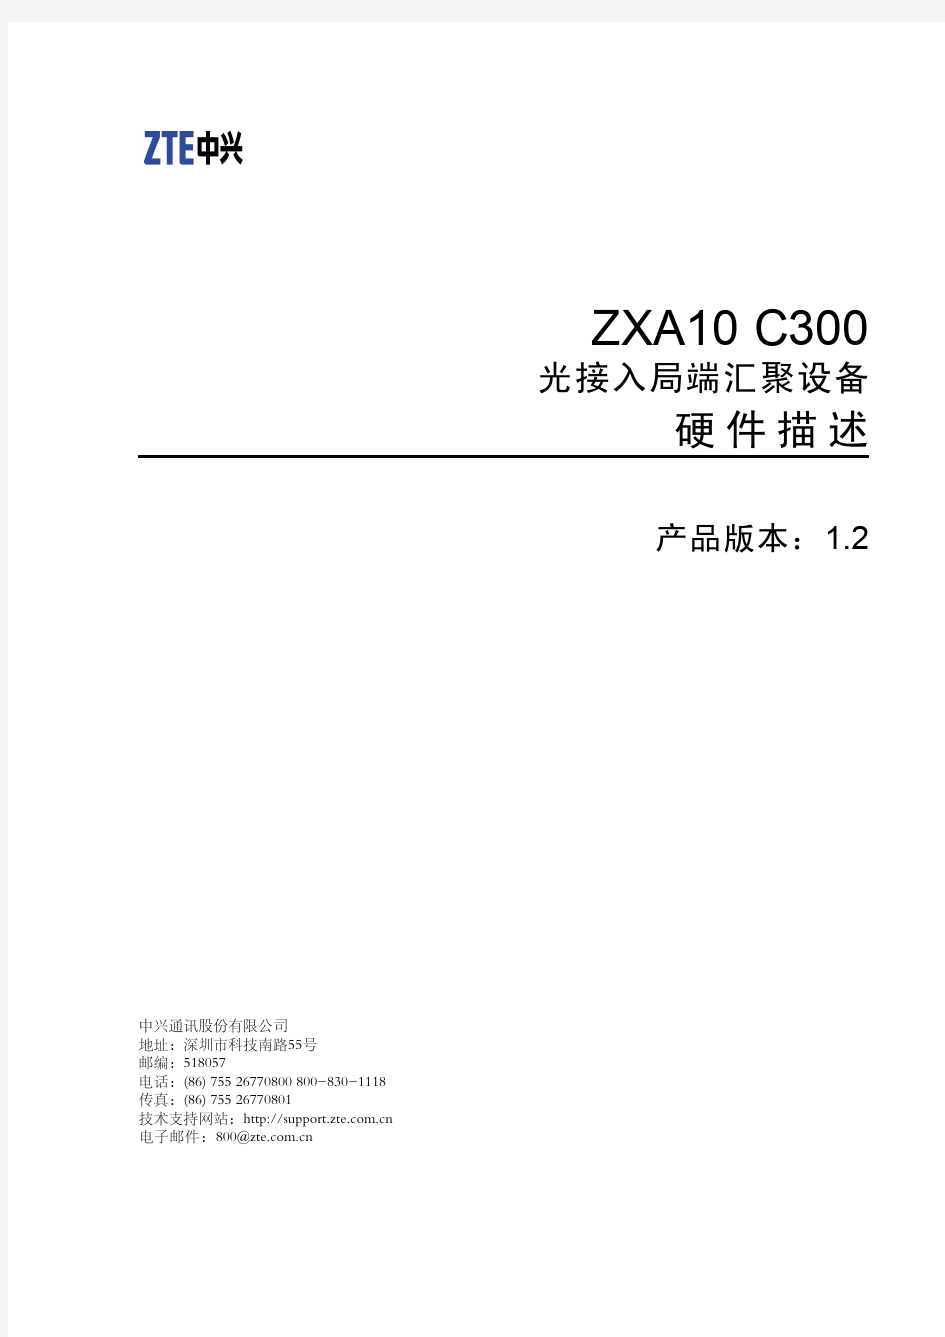 ZXA10 C300光接入局端汇聚设备 硬件描述